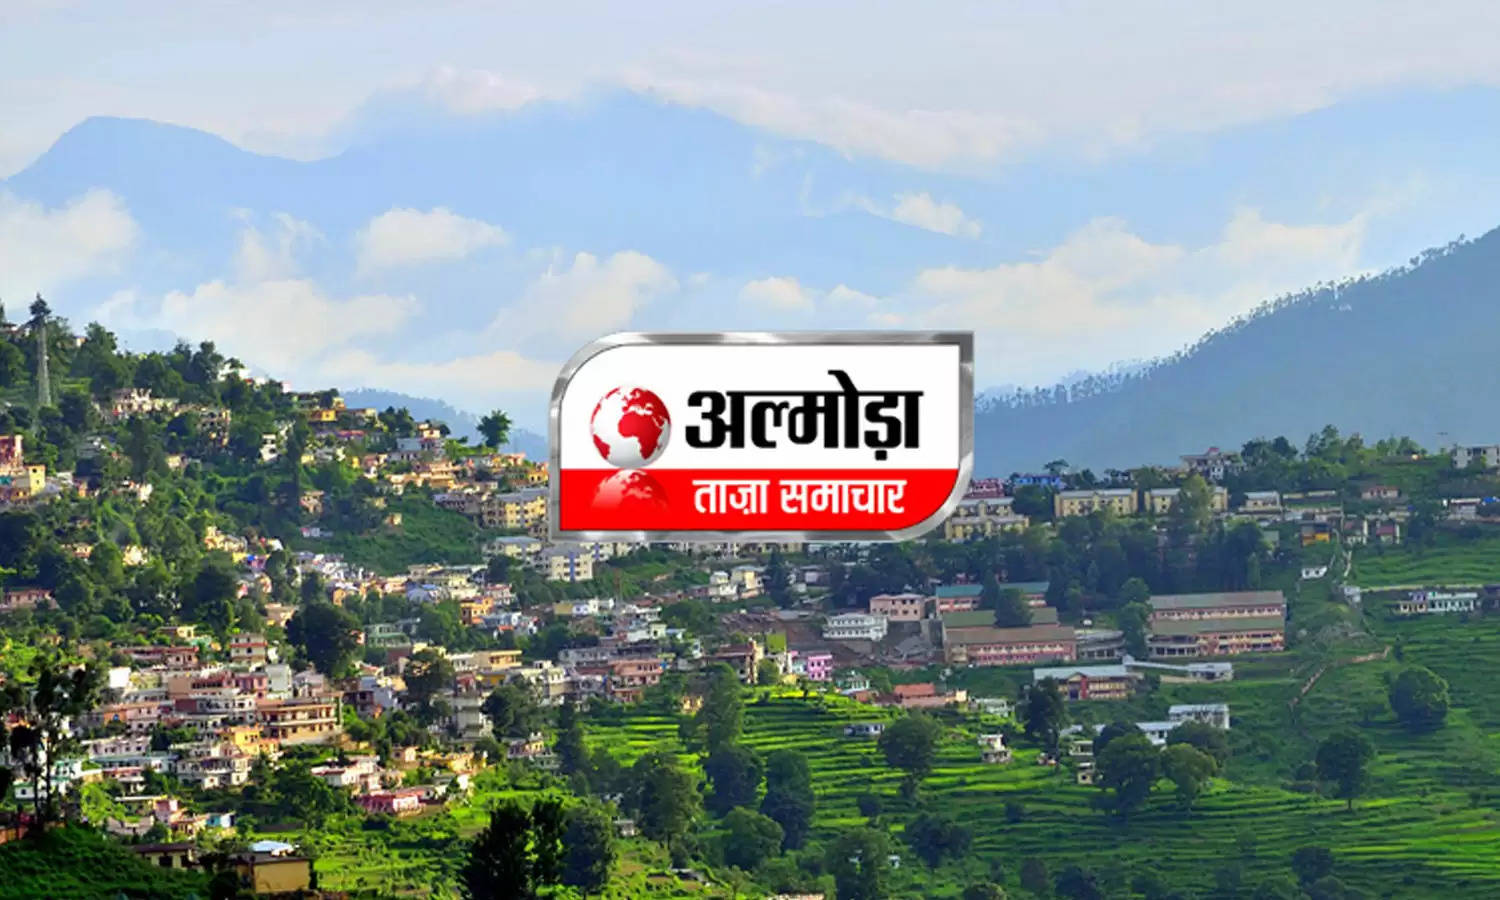 Uttarakhand News Bulletin-15 : वन विभाग ने की रानीखेत रेंज में हरियाली सप्ताह की शुरुआत, जानिए अल्मोड़ा की ऐसी ही तमाम छोटी बड़ी खबरें...